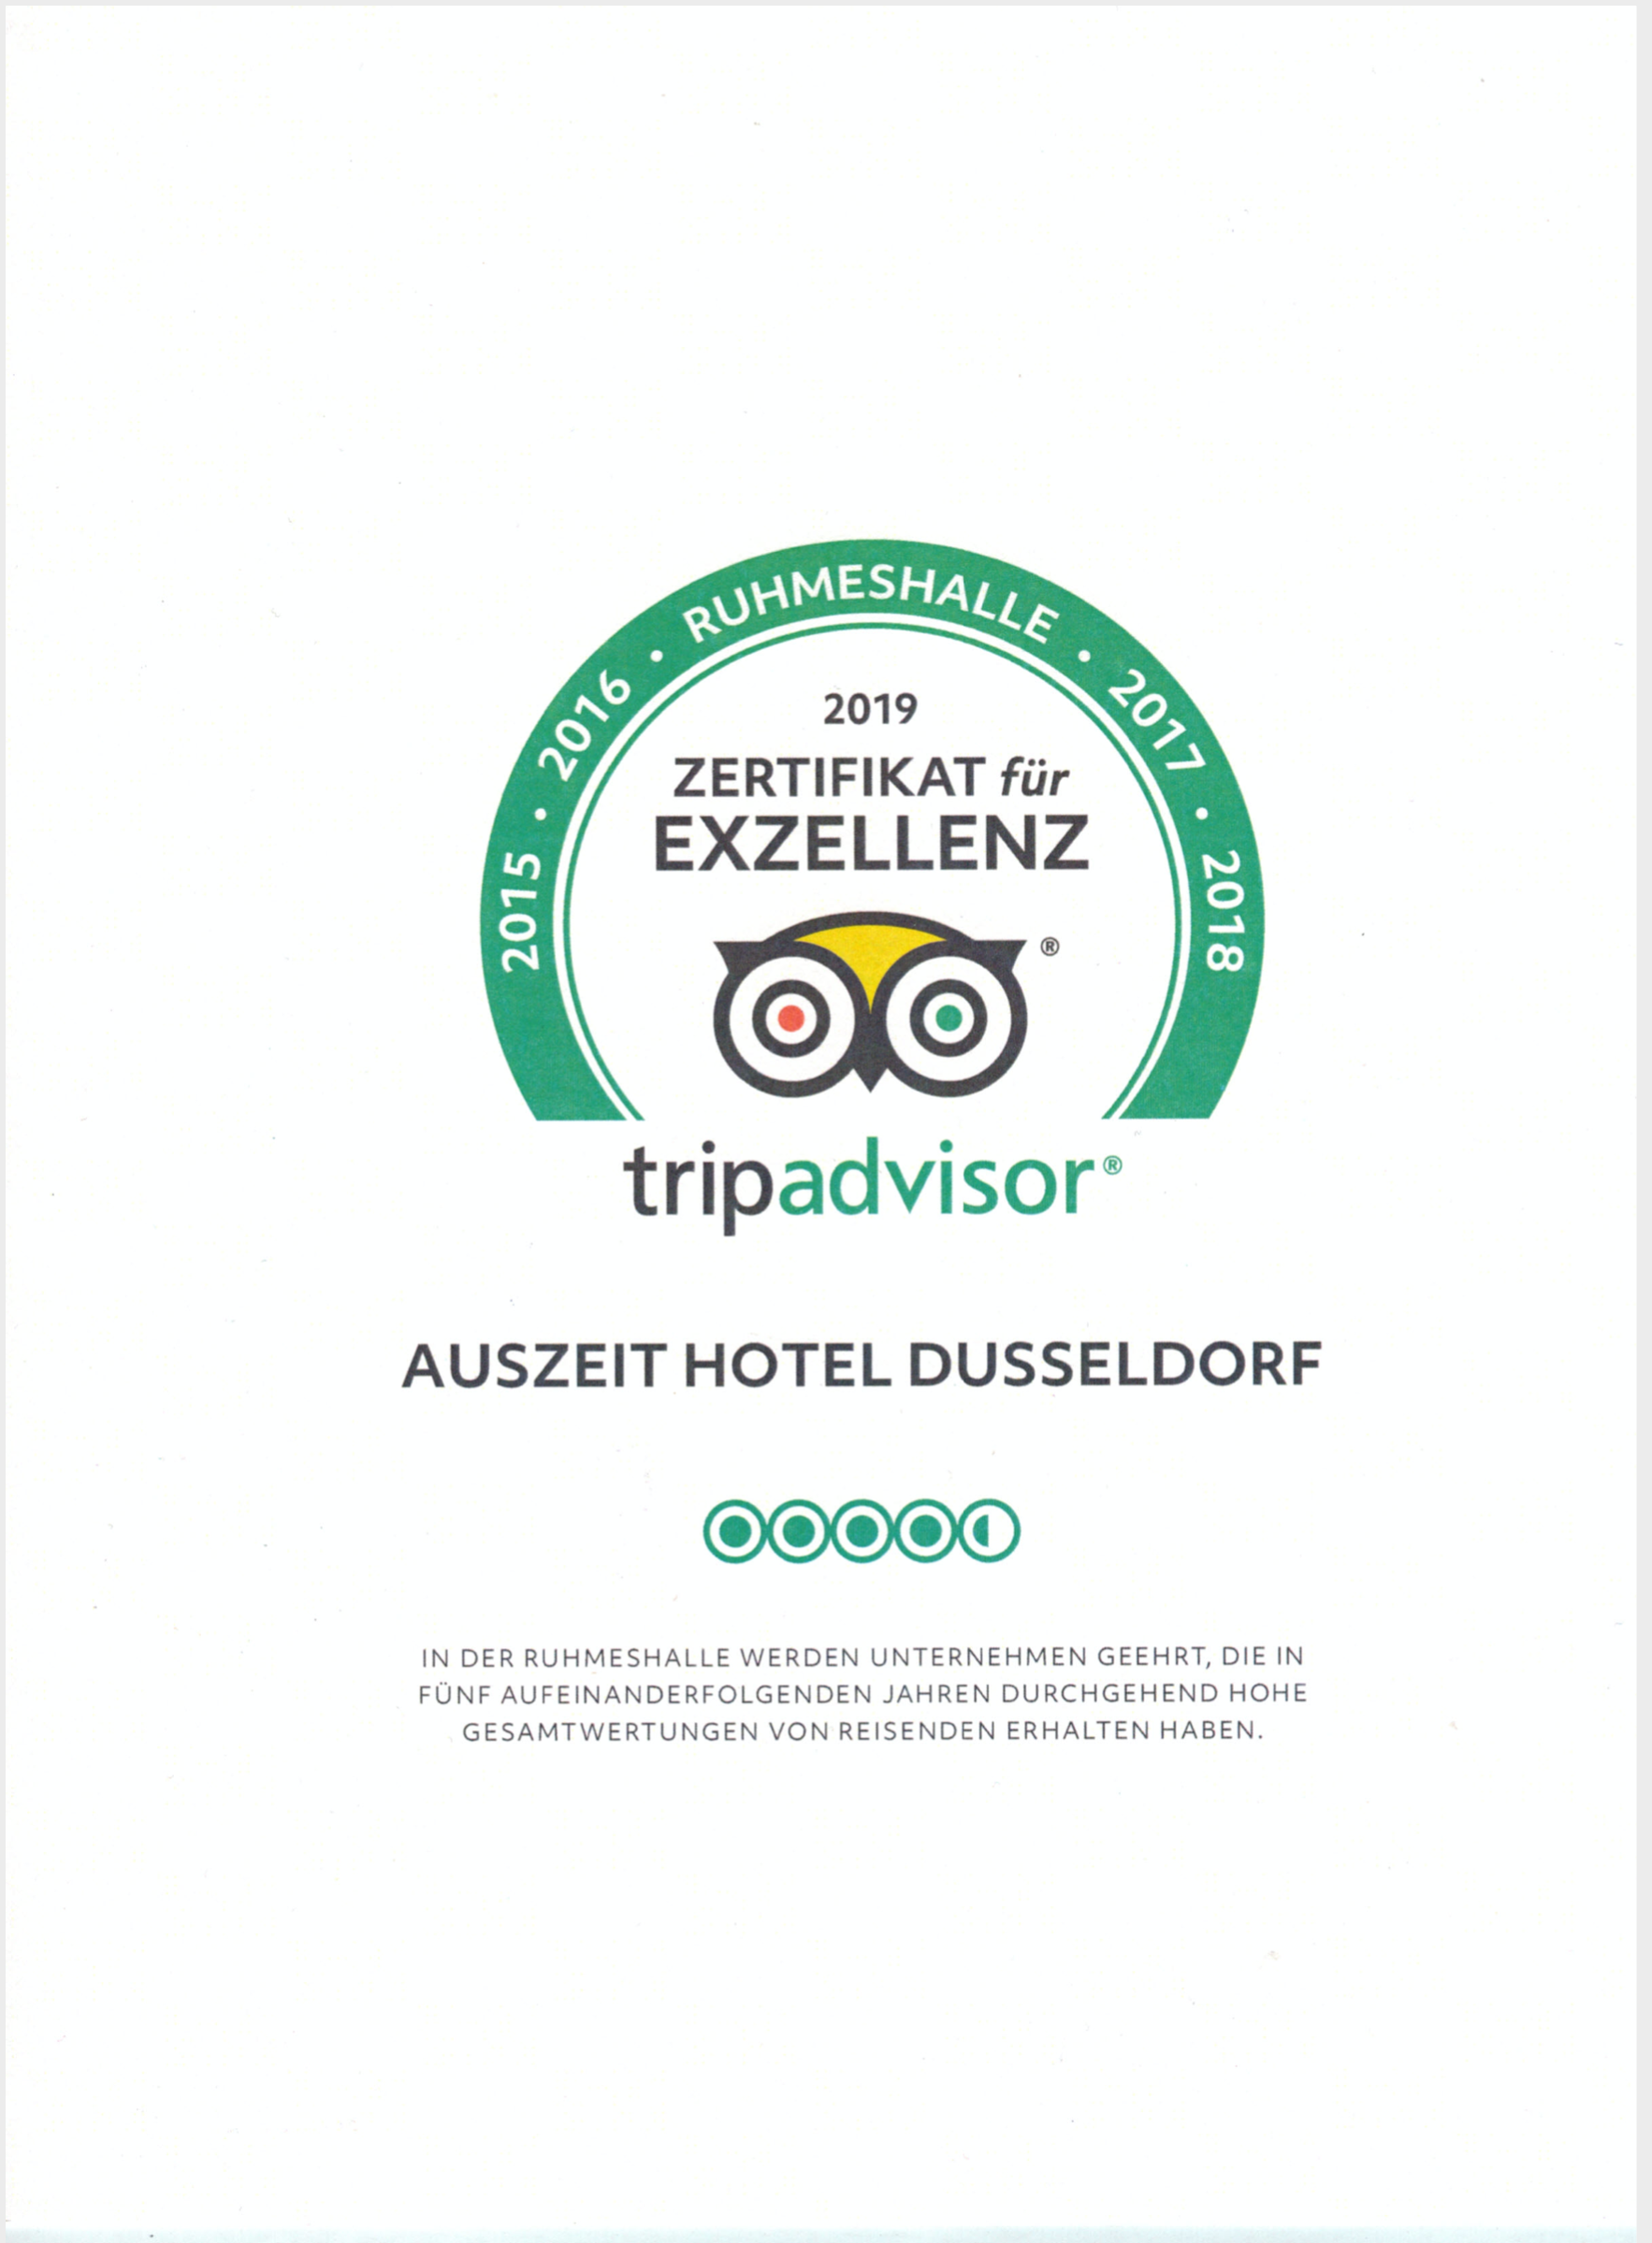 Tripadvisor Zertifikat Exzellenz 2019 Auszeit Hotel